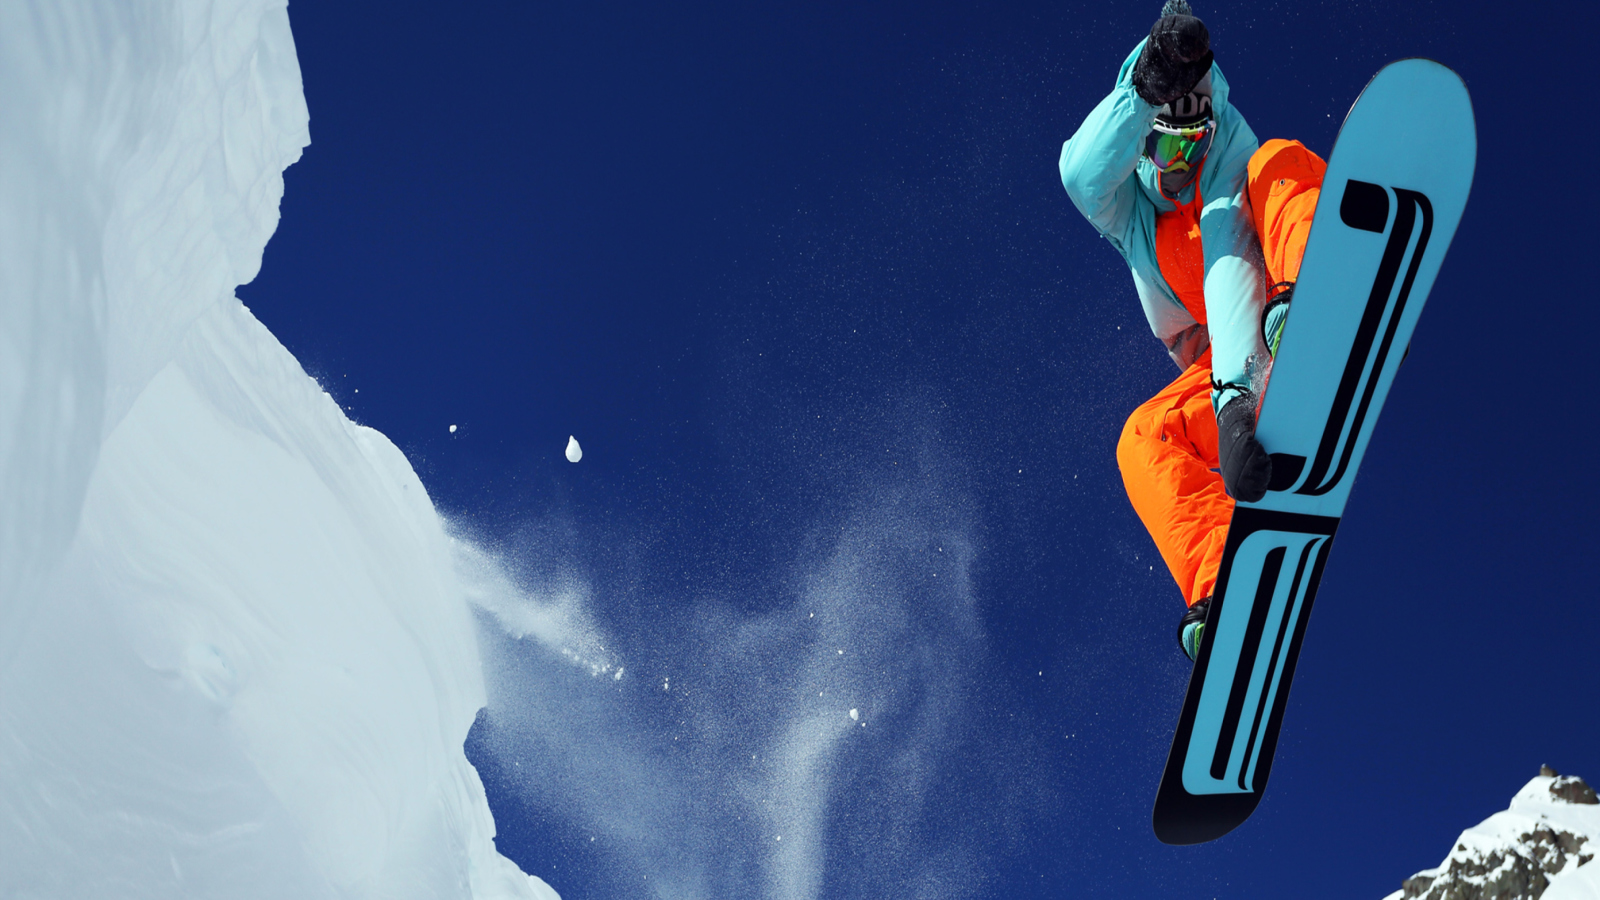 Utah Snowboard screenshot #1 1600x900